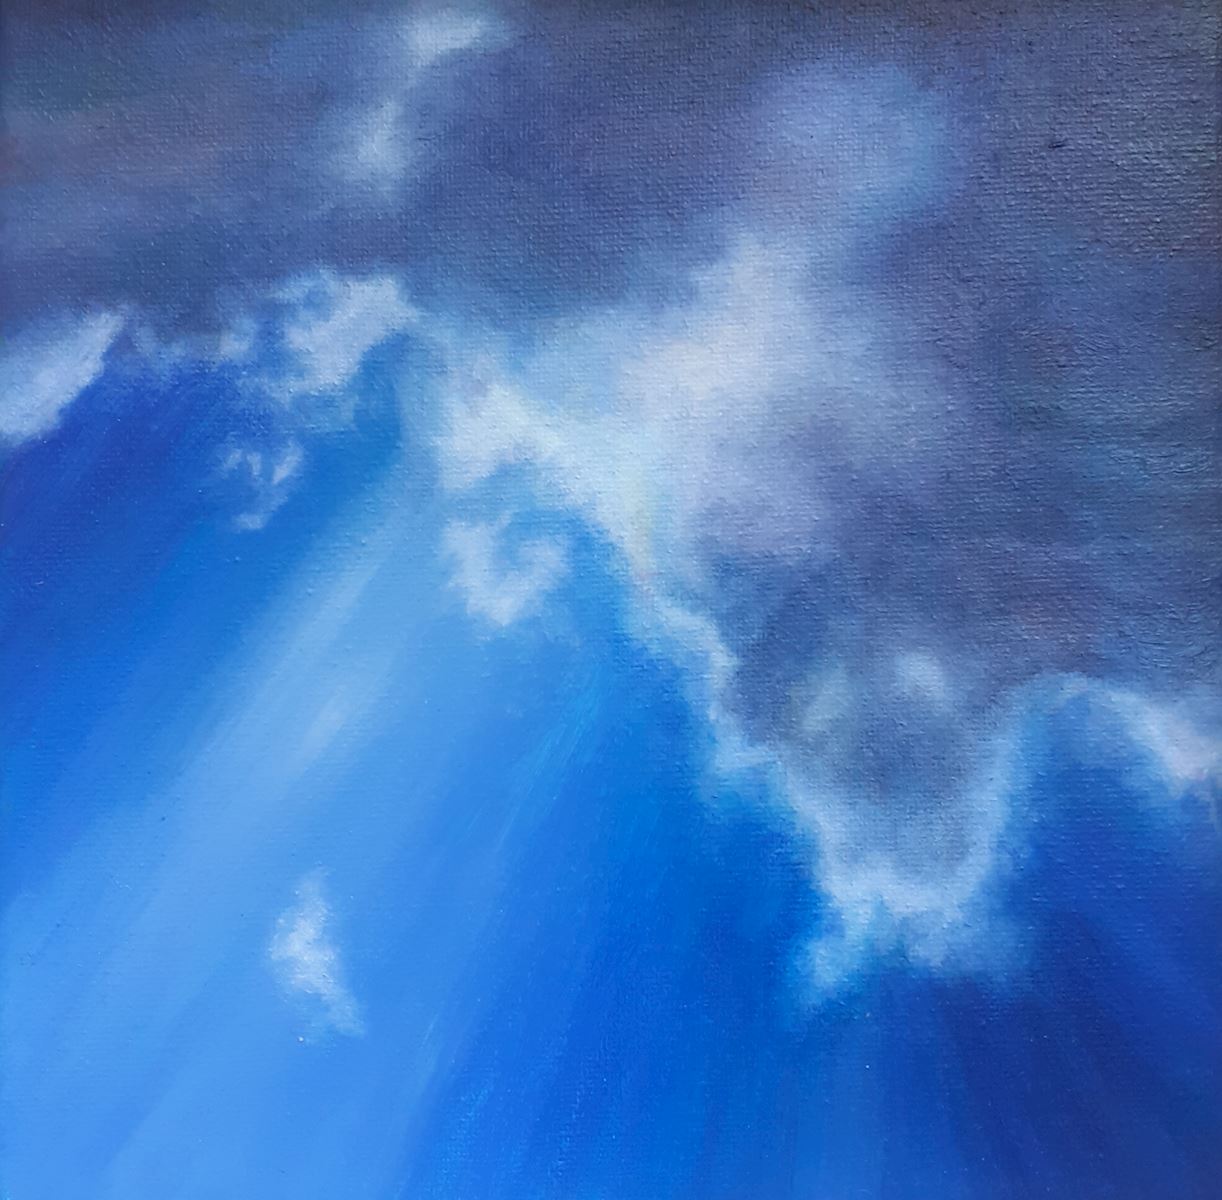 sky I rian verbeek lucht wolken zon blauw hemels kunst uit de kast noordwijk schilderij